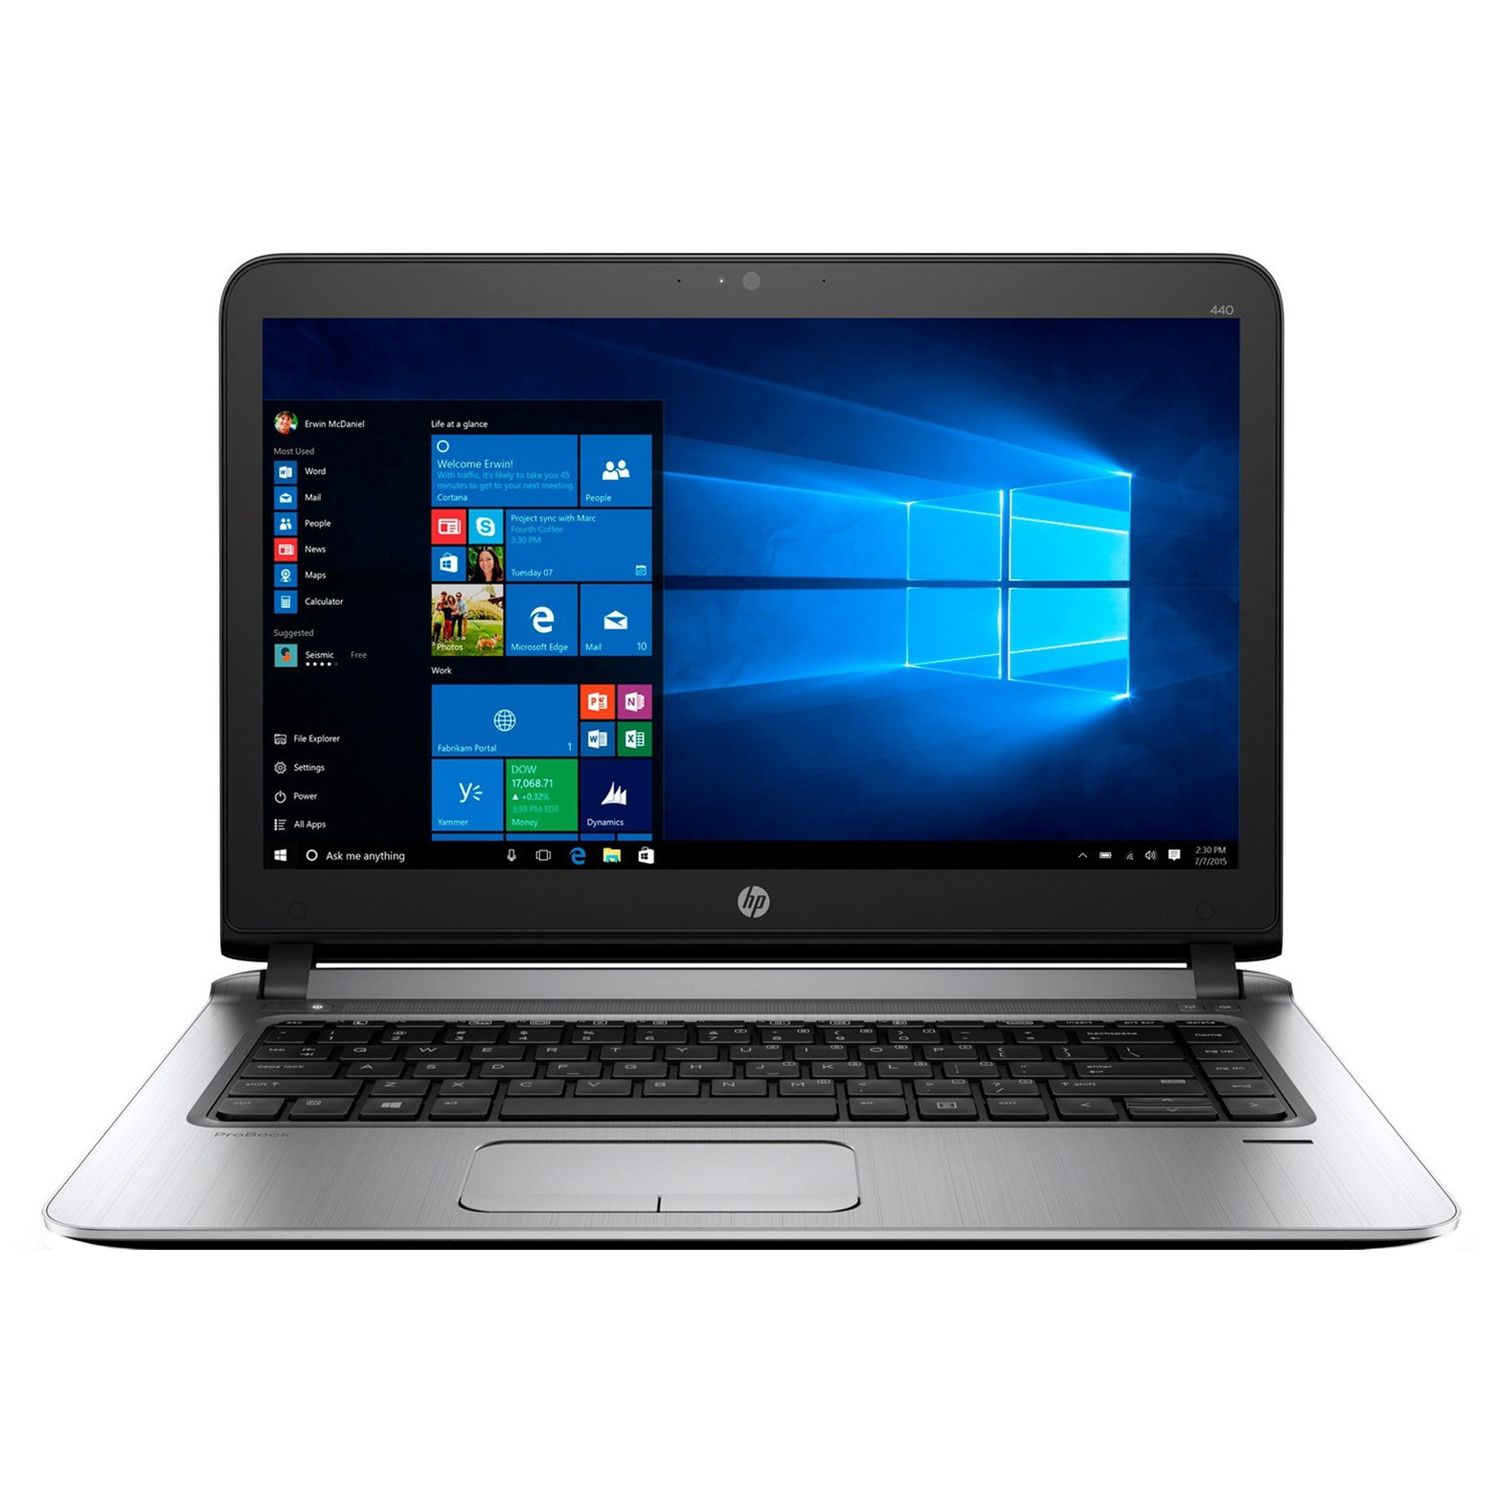 Laptop HP ProBook 440 G3, Intel Core i3-6100U, 4GB DDR4, HDD 500GB, Intel HD Graphics, Windows 10 Pro